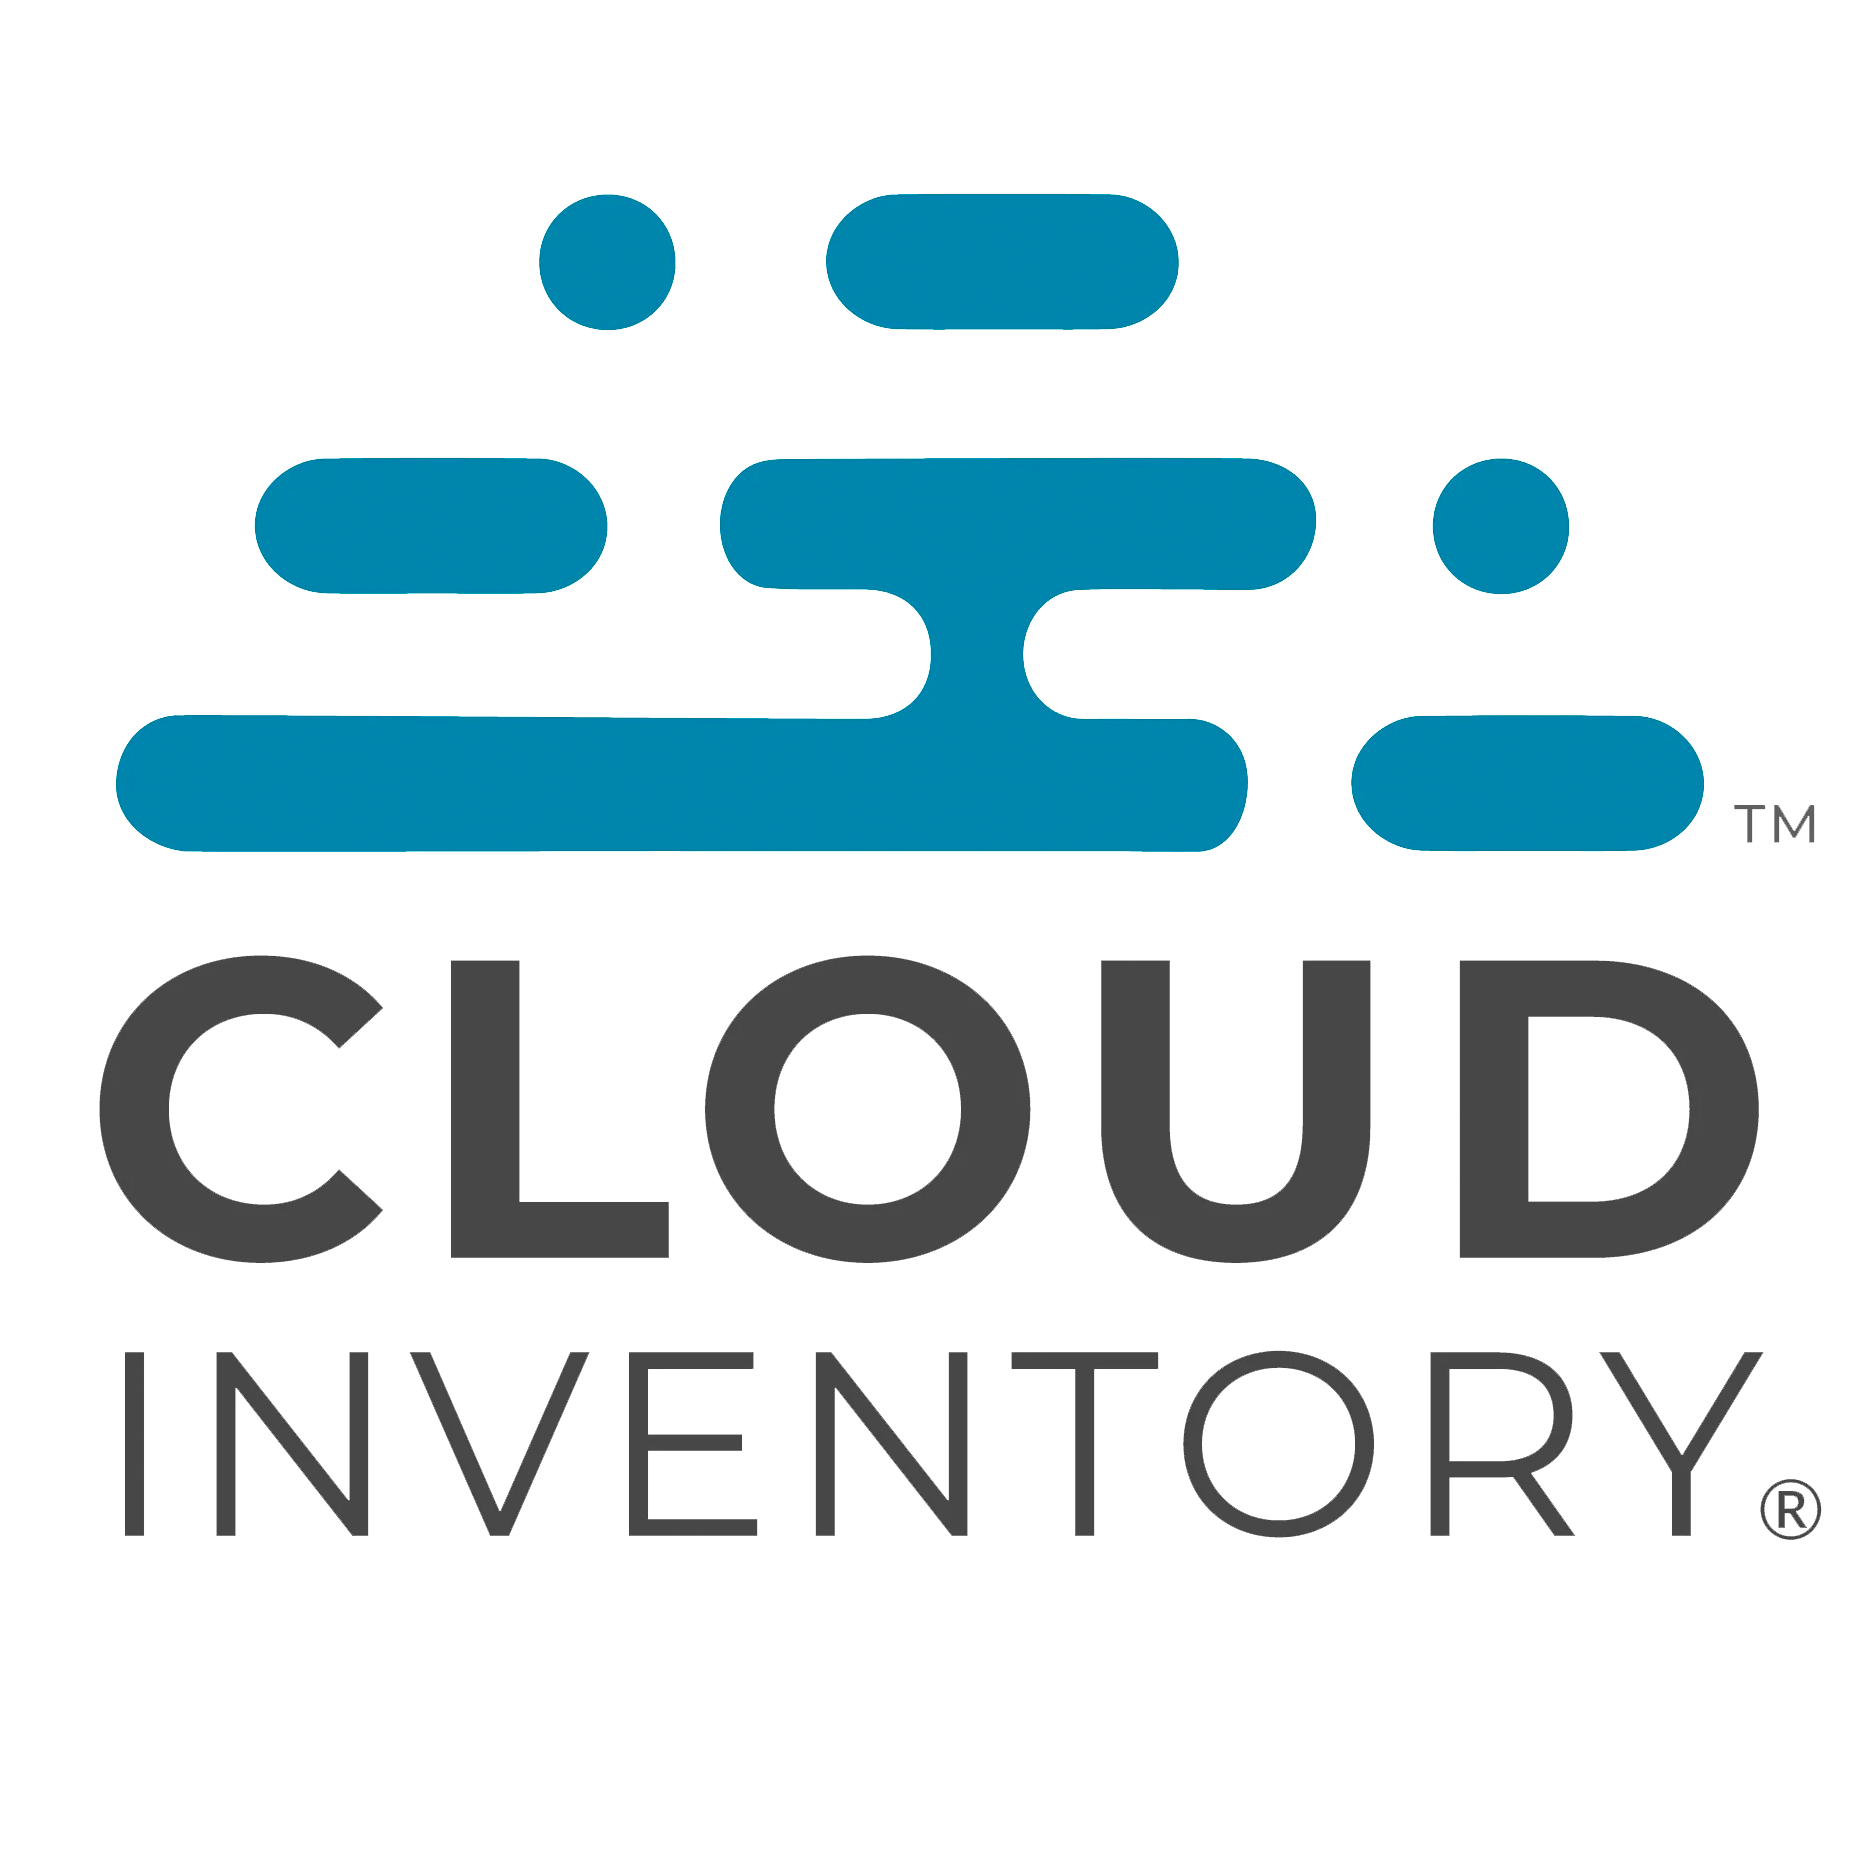 www.cloudinventory.com